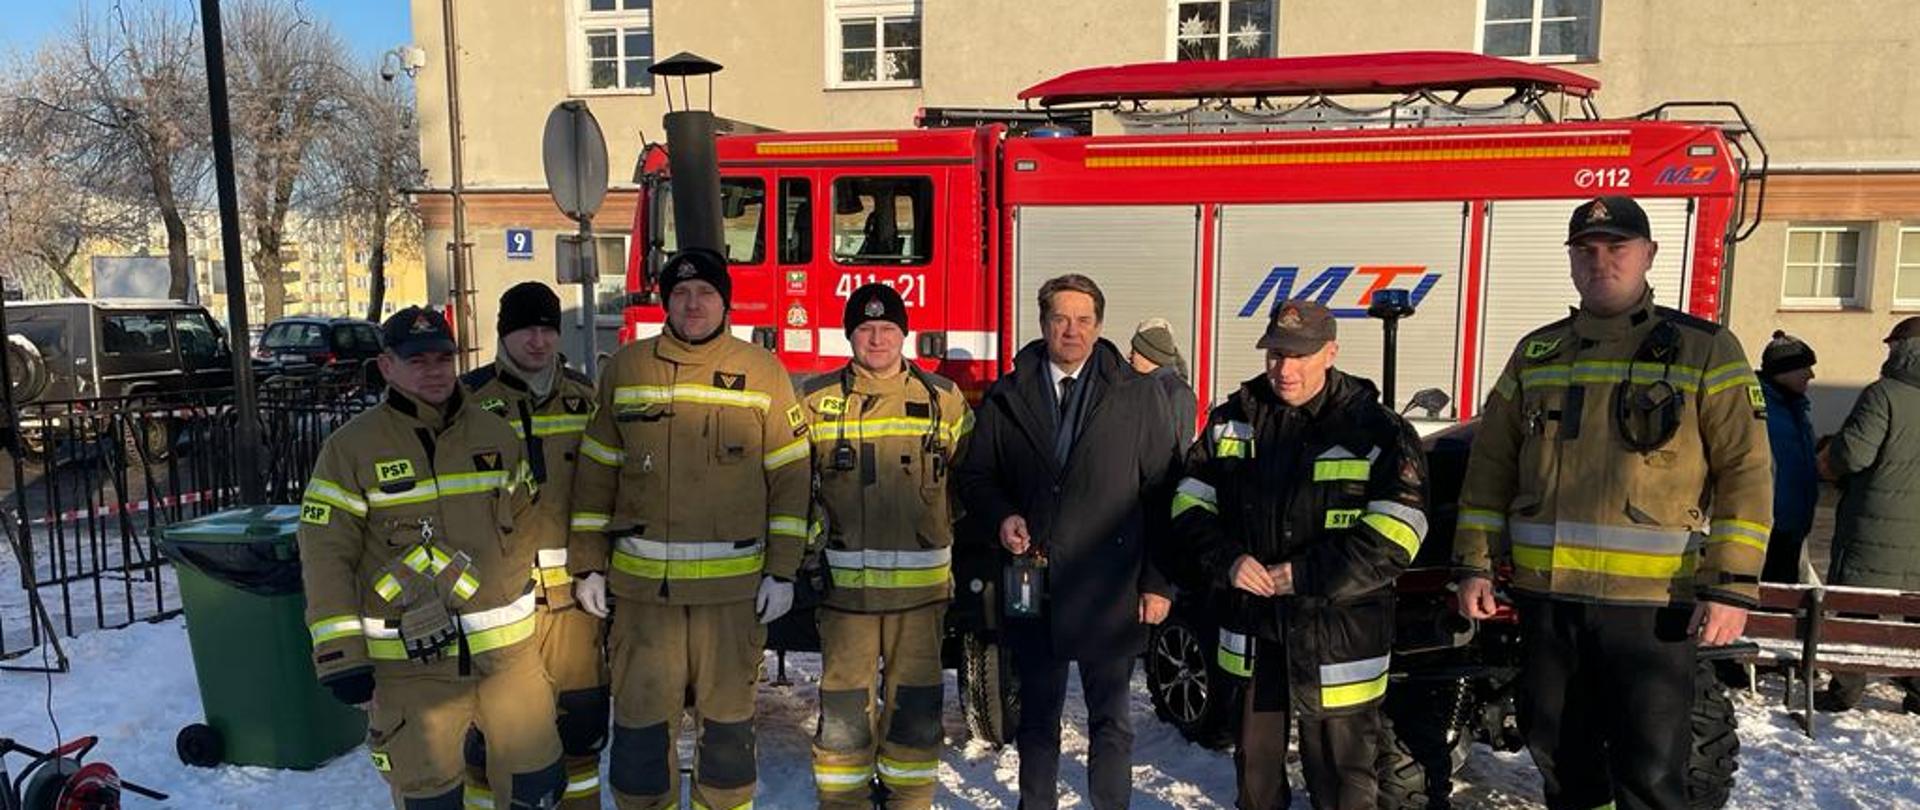 Zima, biało od śniegu. Na zdjęciu starosta braniewski stoi ze strażakami w jasnych mundurach. W tle budynek i samochód strażacki. Słonecznie.